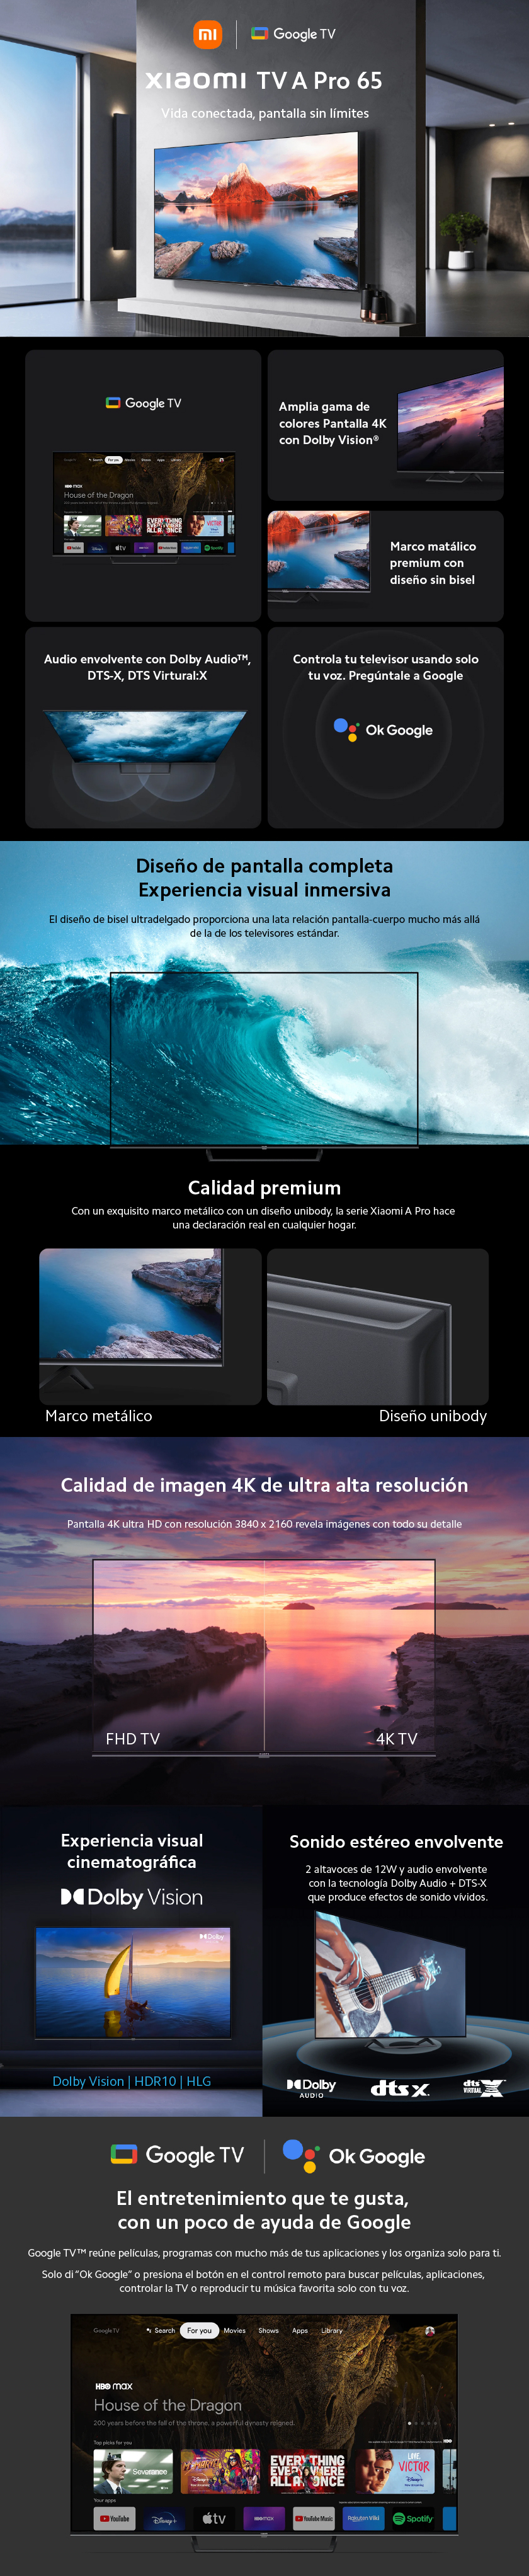 Xiaomi TV A Pro 65